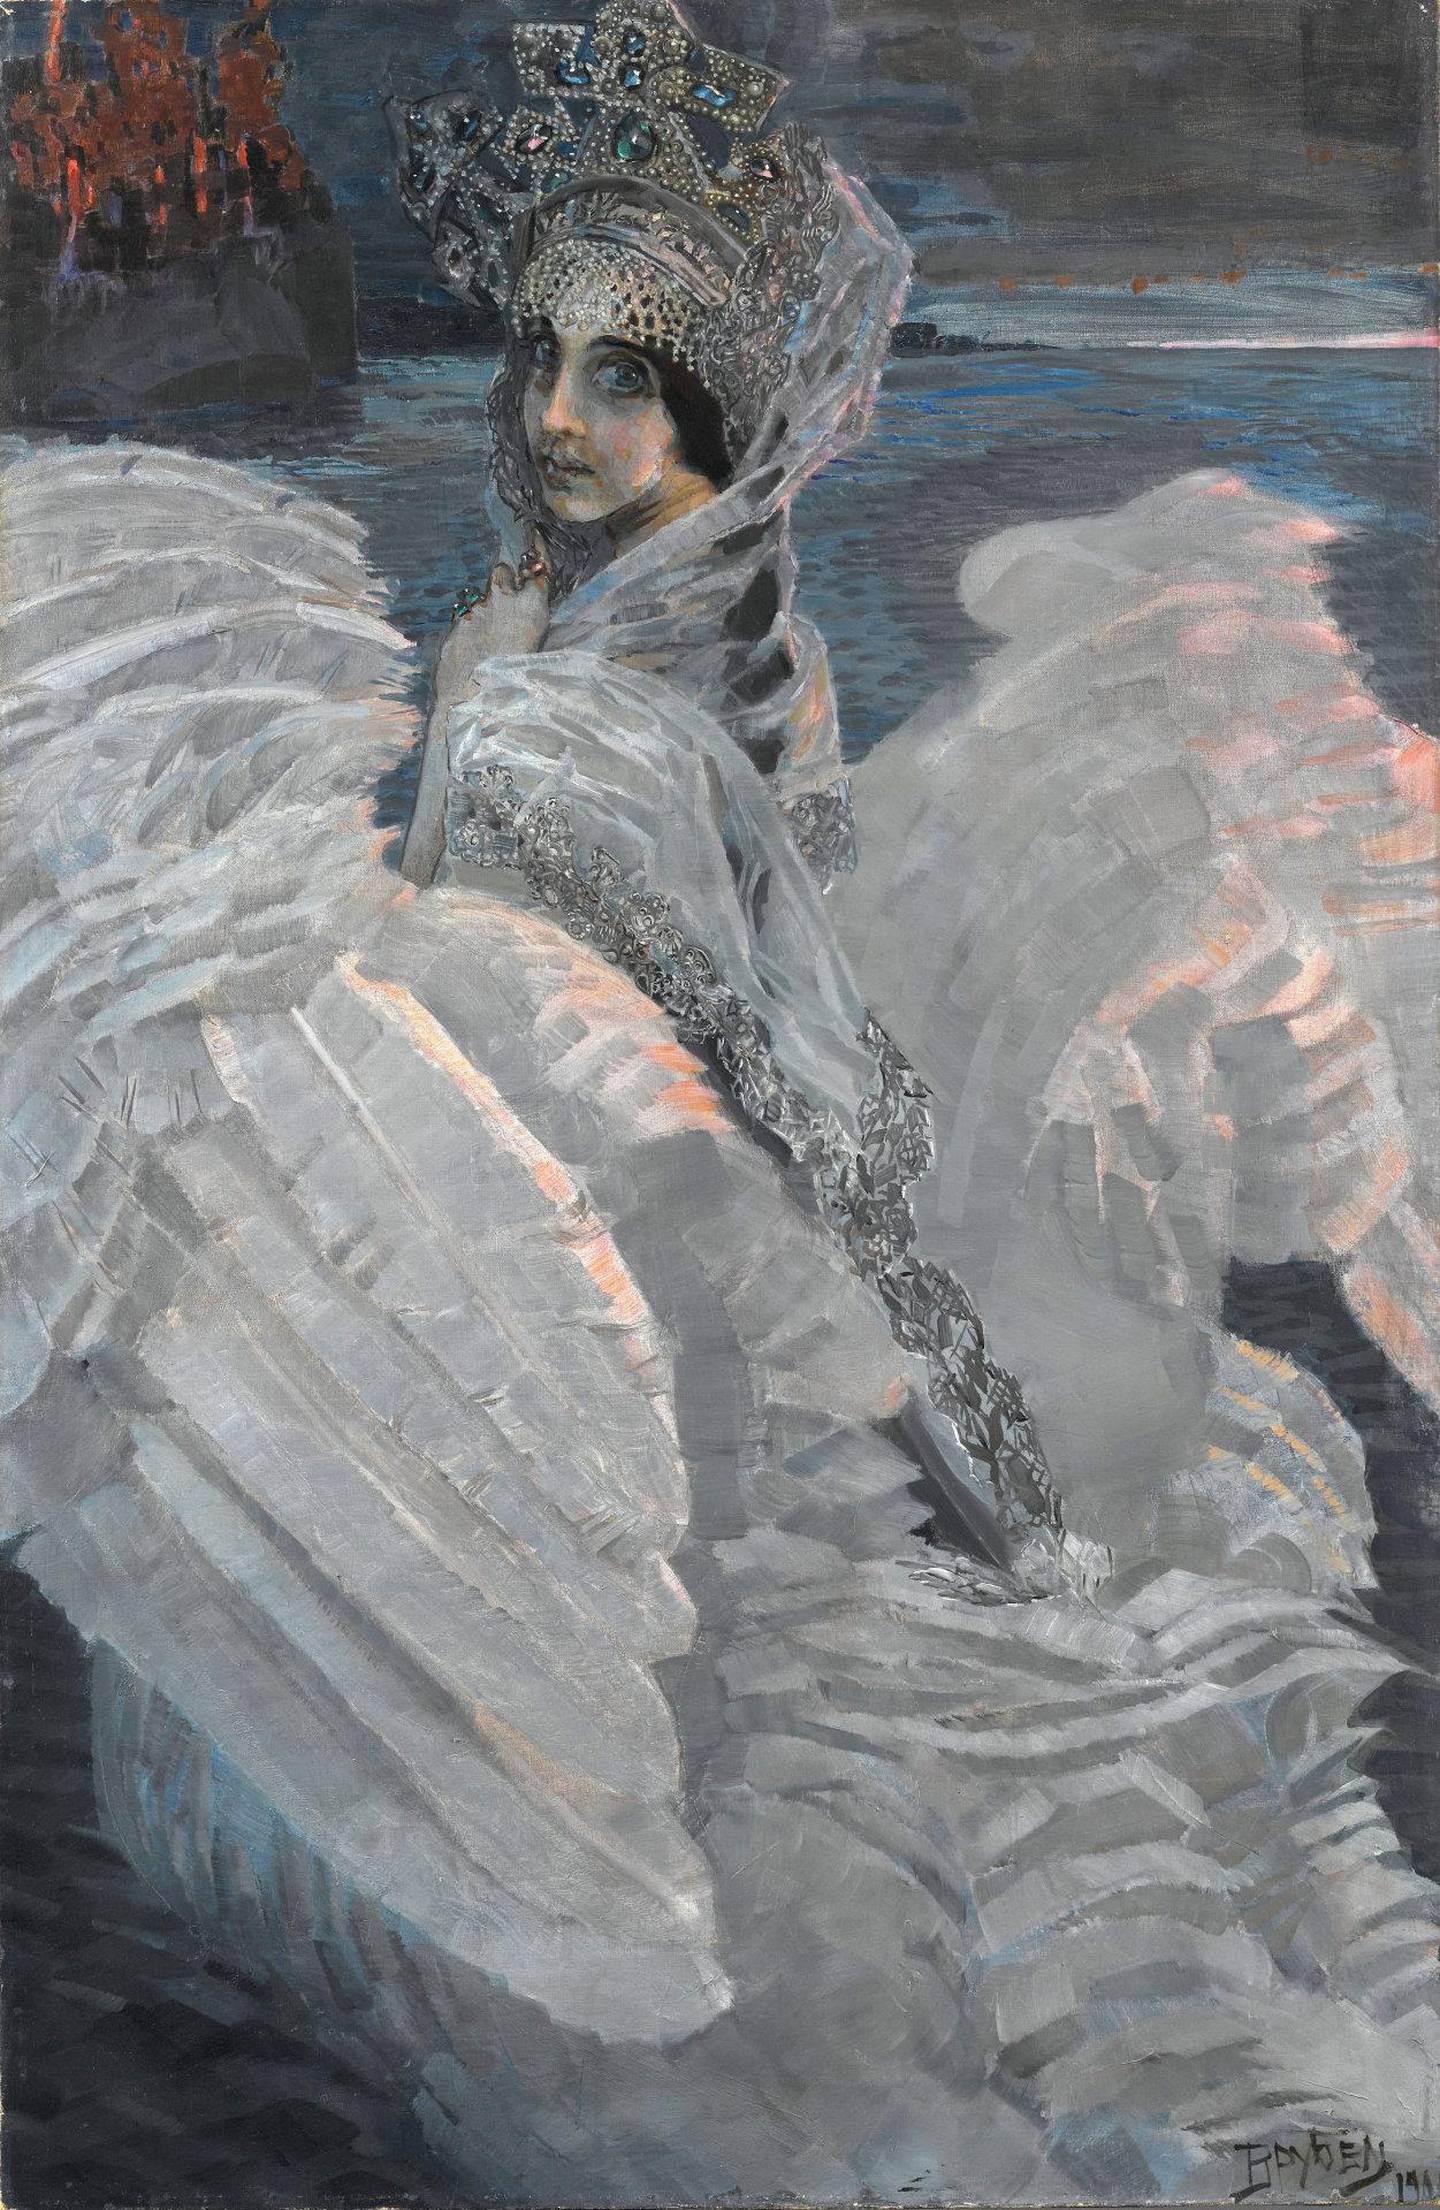 Mikhail Vrubels «Svaneprinsessen» er ett av hovedmotivene i utstillingen. Motivet eksisterer i spennet mellom myte og realisme, romantikk og nyskaping. FOTO: TRETJAKOV-GALLERIET